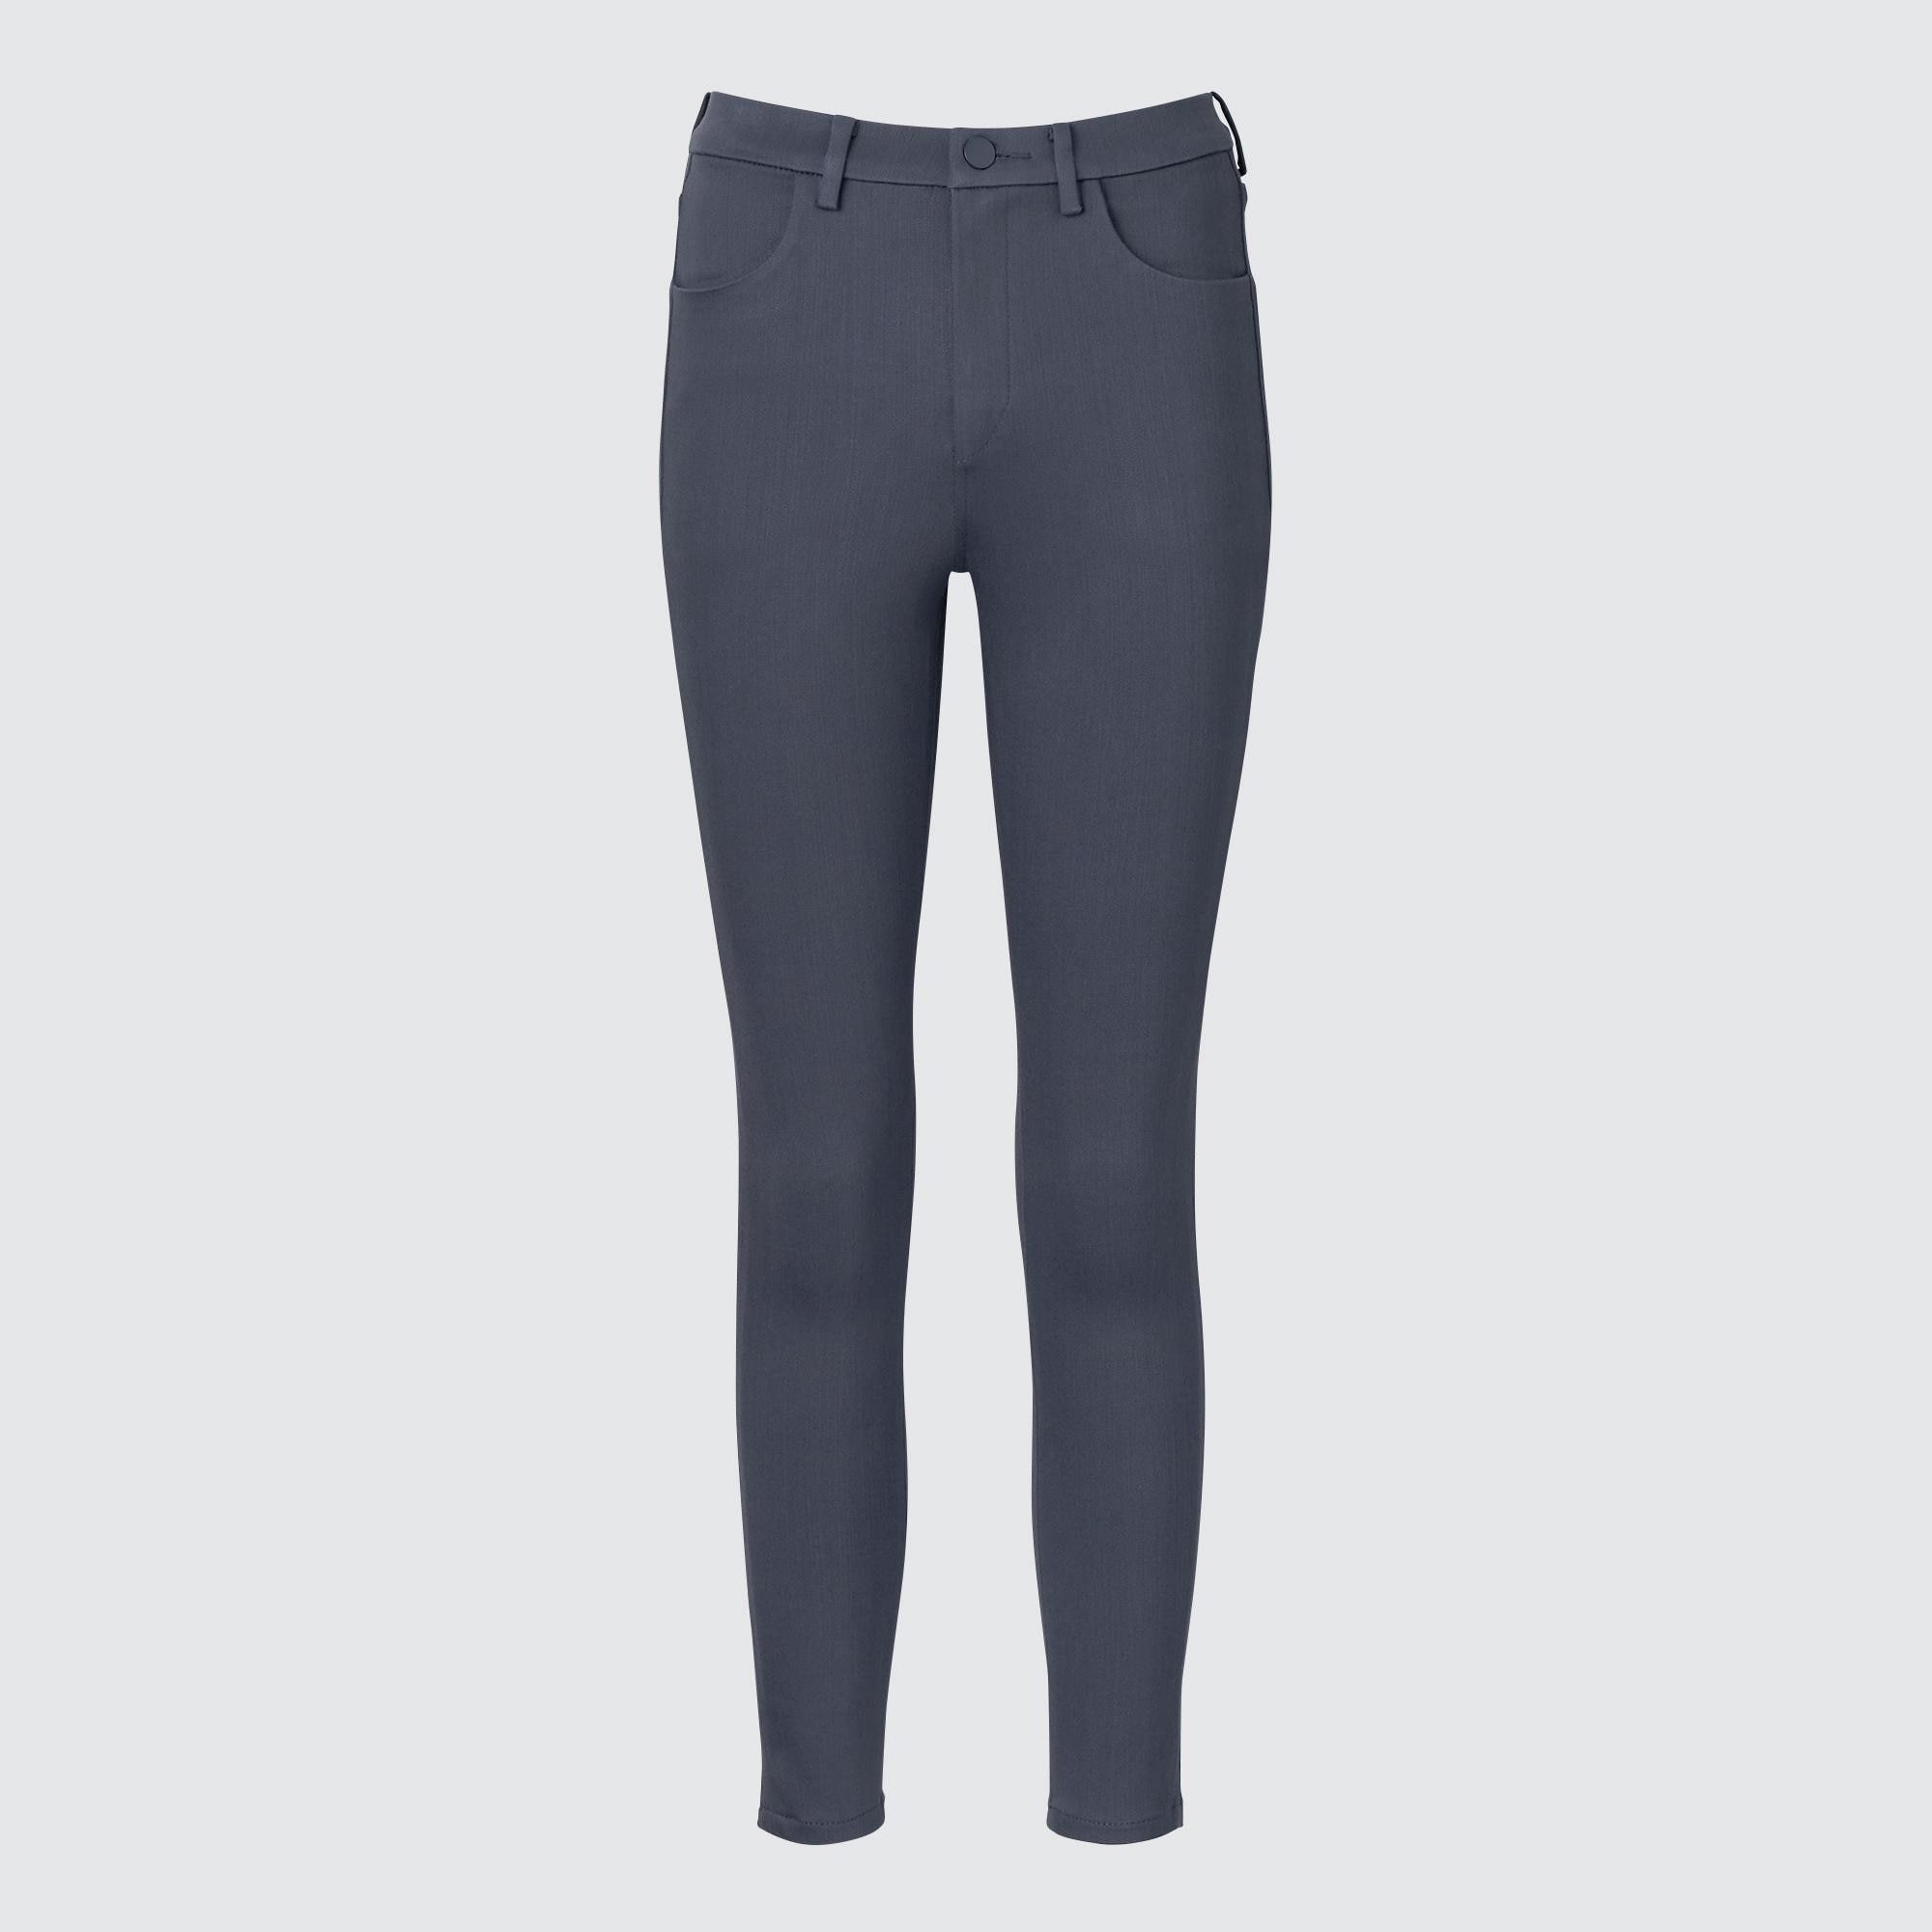 Джинсы Uniqlo женские скинни, серый джинсы скинни uniqlo размер 38 голубой